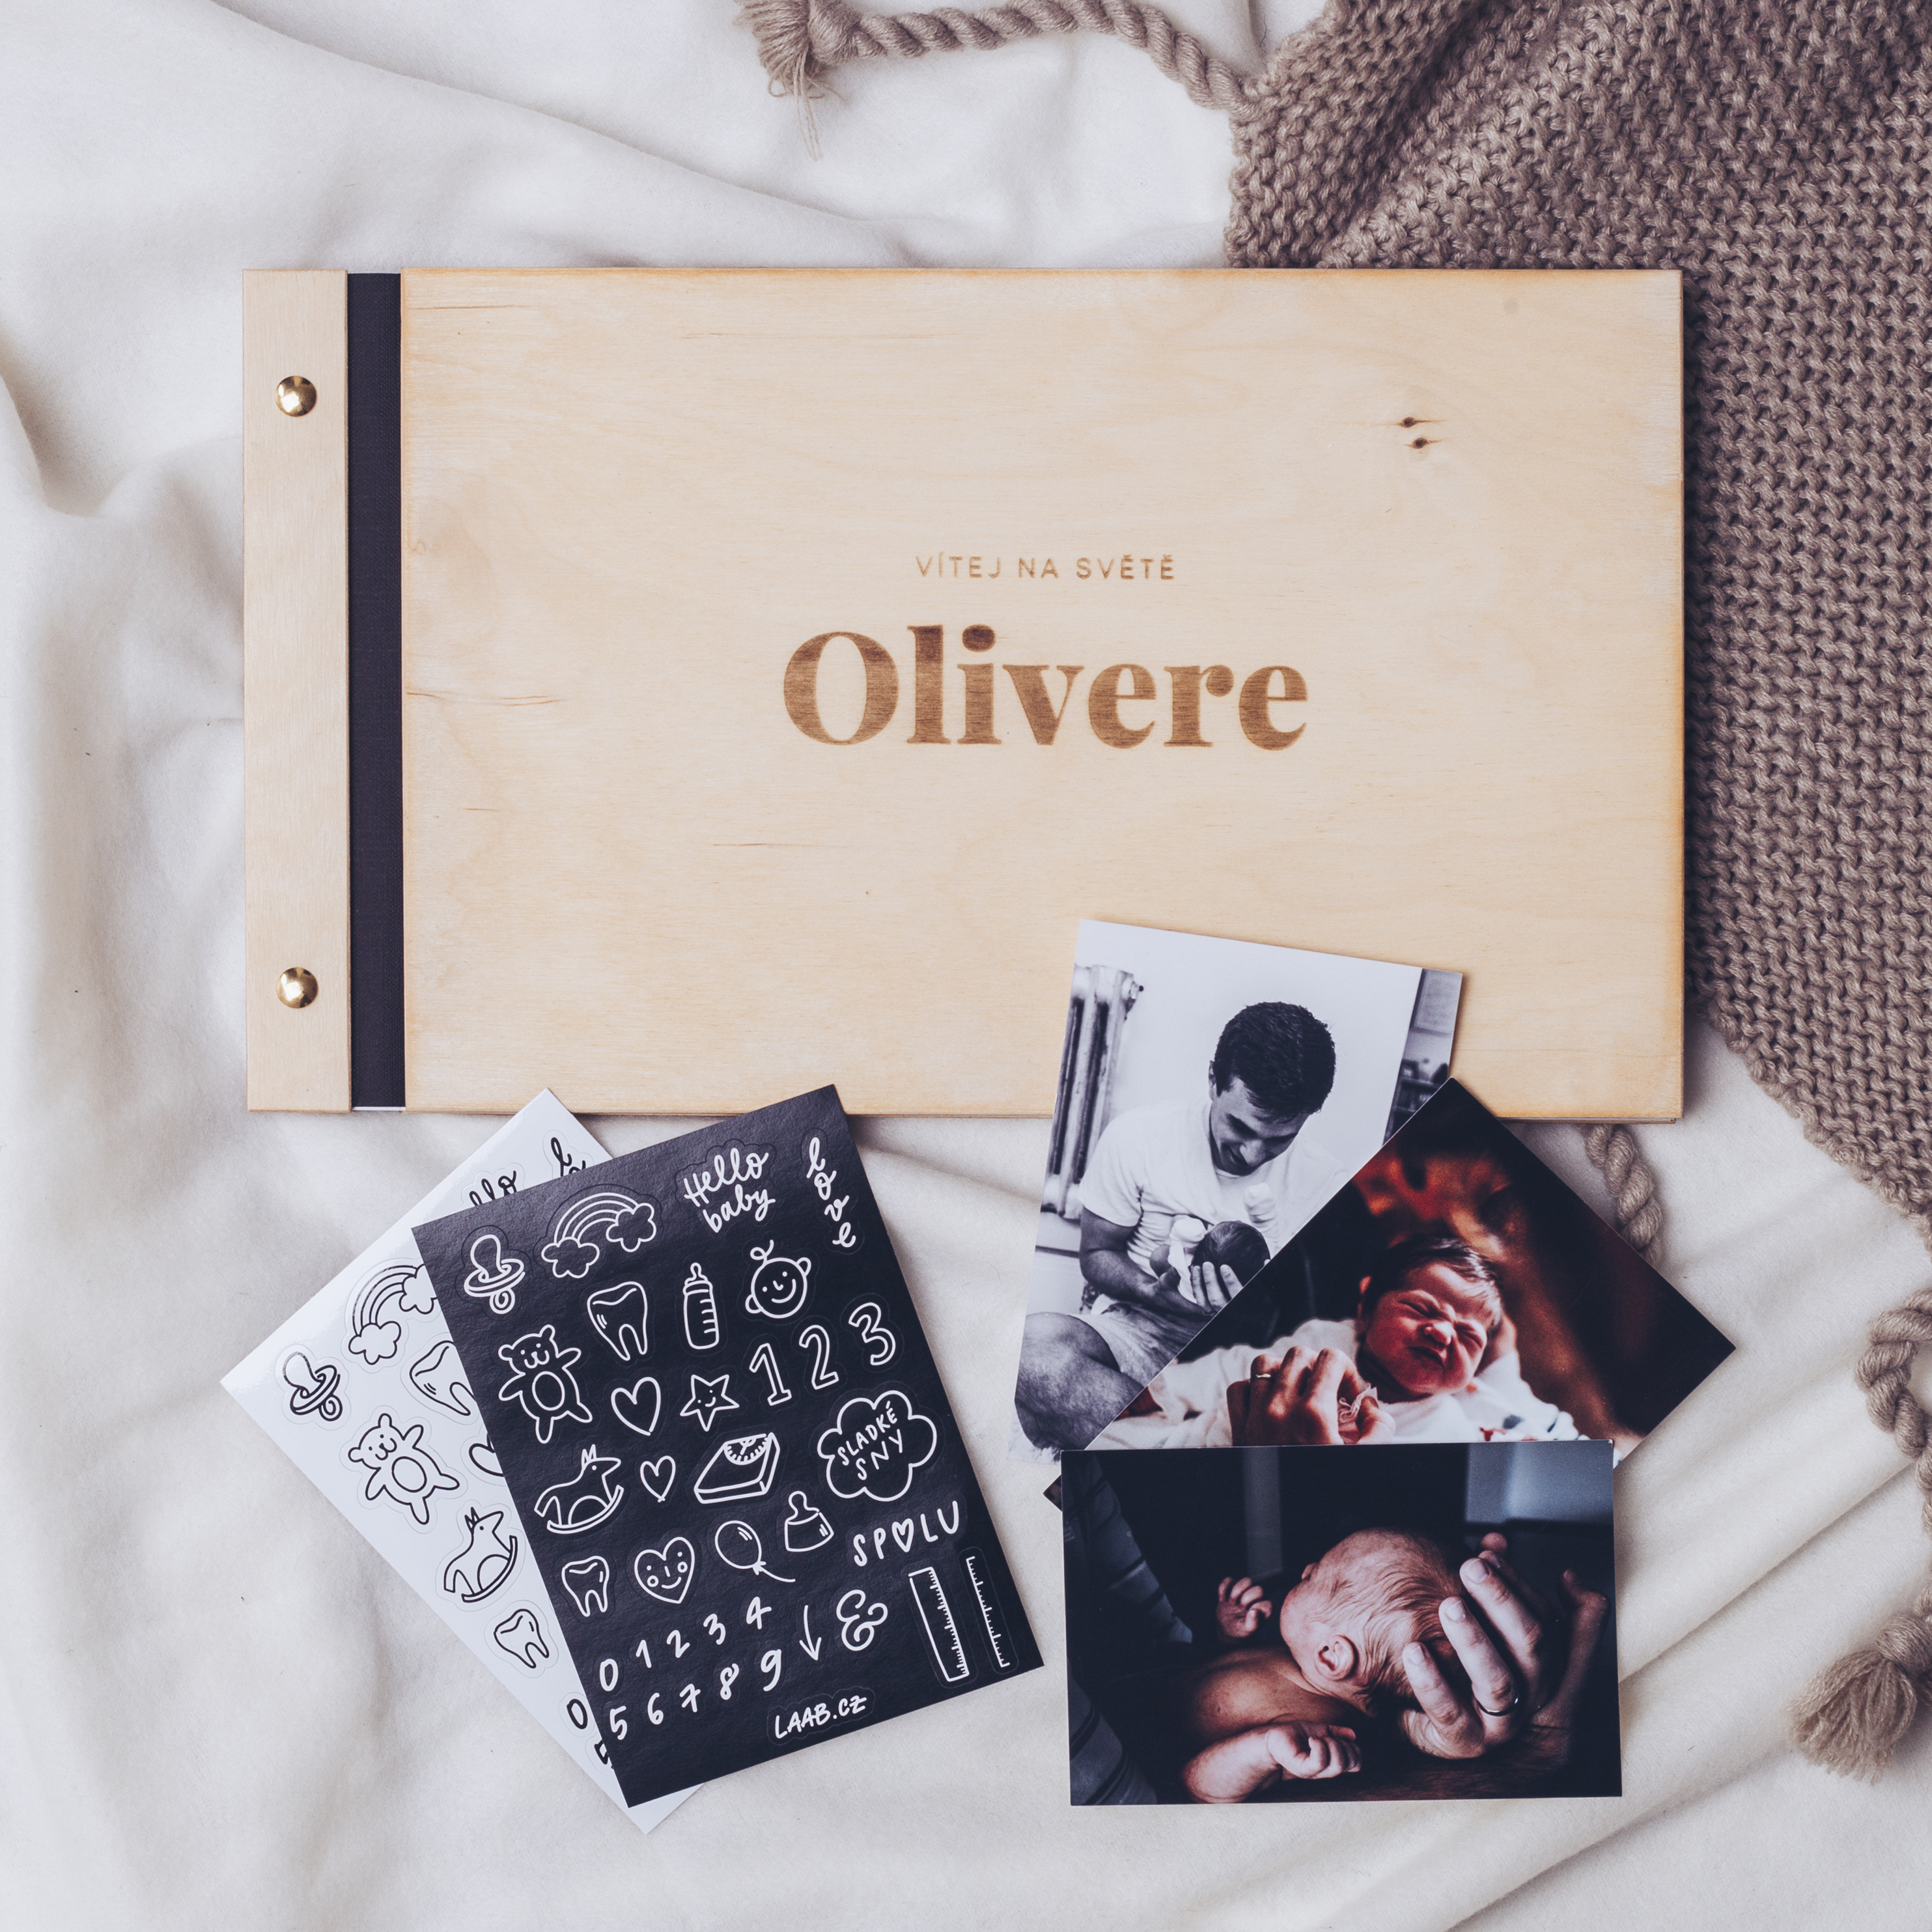 dřevěné fotoalbum Oliver: FORMÁT FOTOALBA na šířku, POČET LISTŮ 35, FORMÁT FOTOALBA na výšku, POČET LISTŮ 20 s prokladovými listy, BARVA LISTŮ bílá